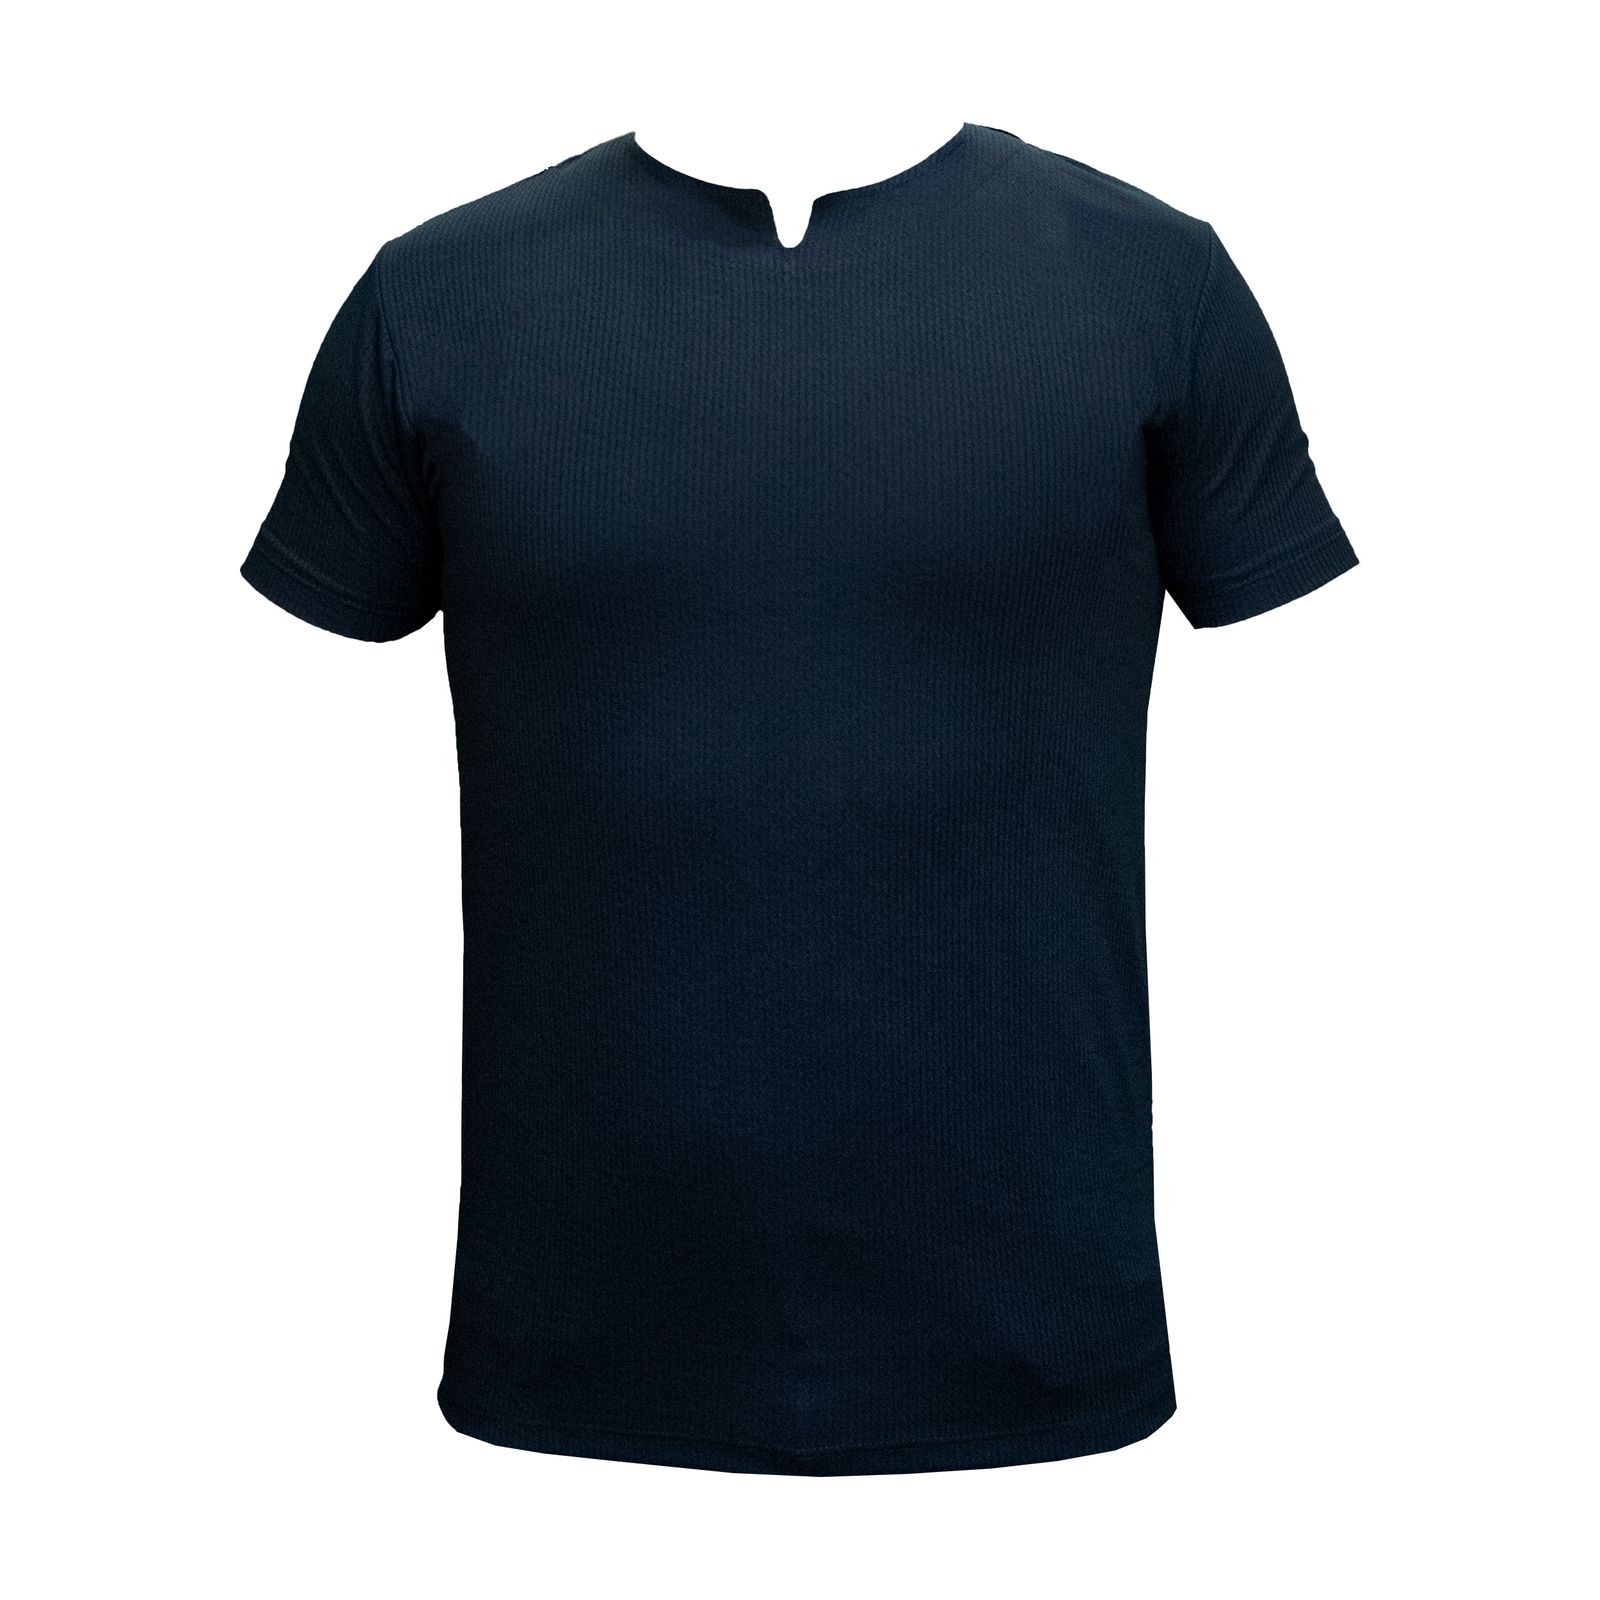 تی شرت آستین کوتاه مردانه کاملیا مدل کوبایی کد 51677 رنگ مشکی -  - 4